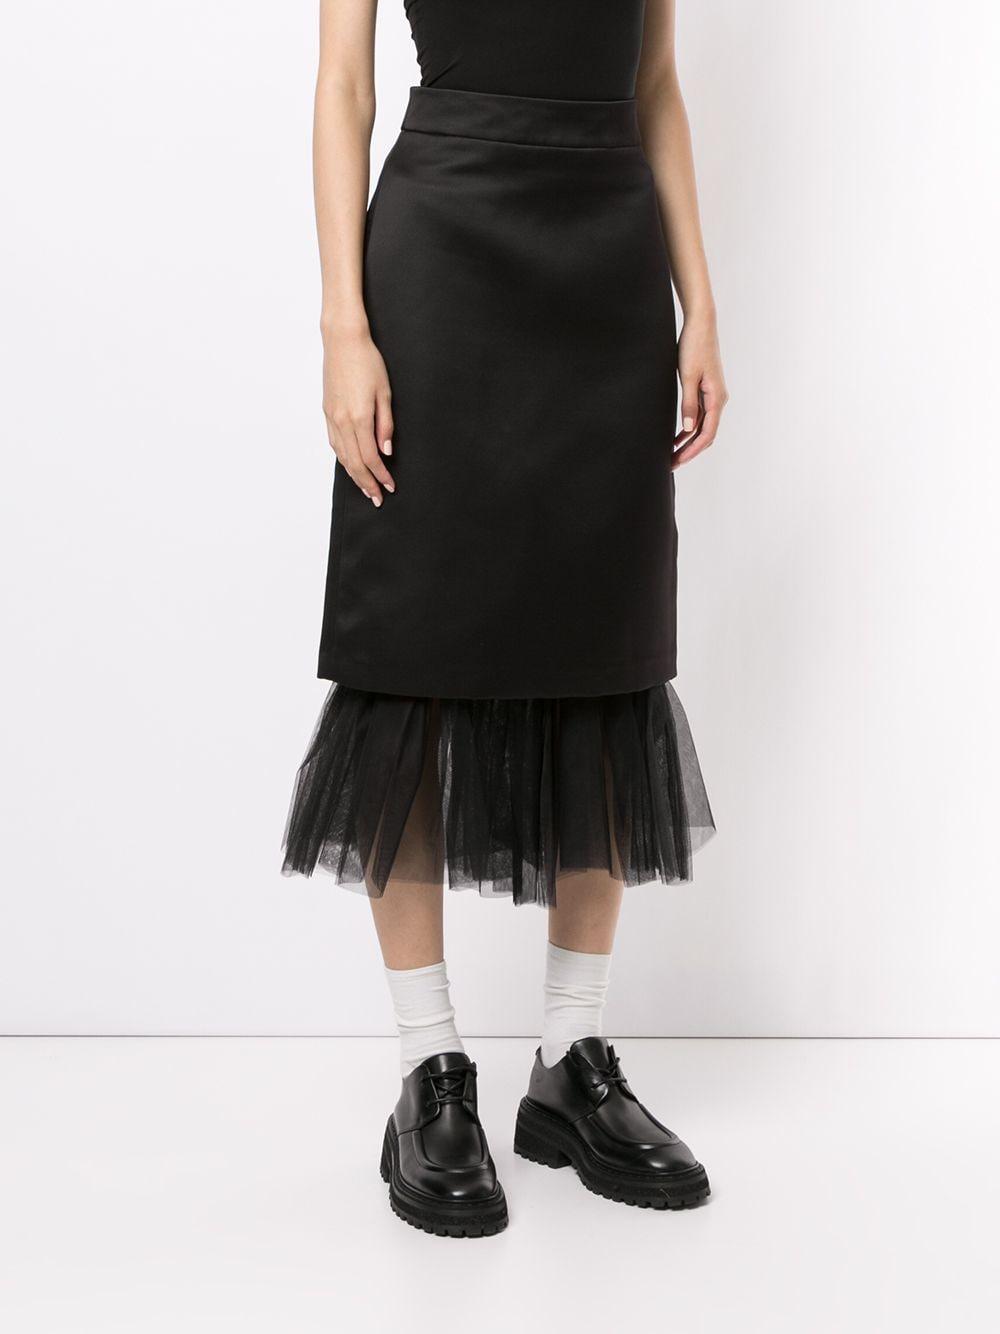 ShuShu/Tong Tulle Hem Pencil Skirt in Black - Lyst